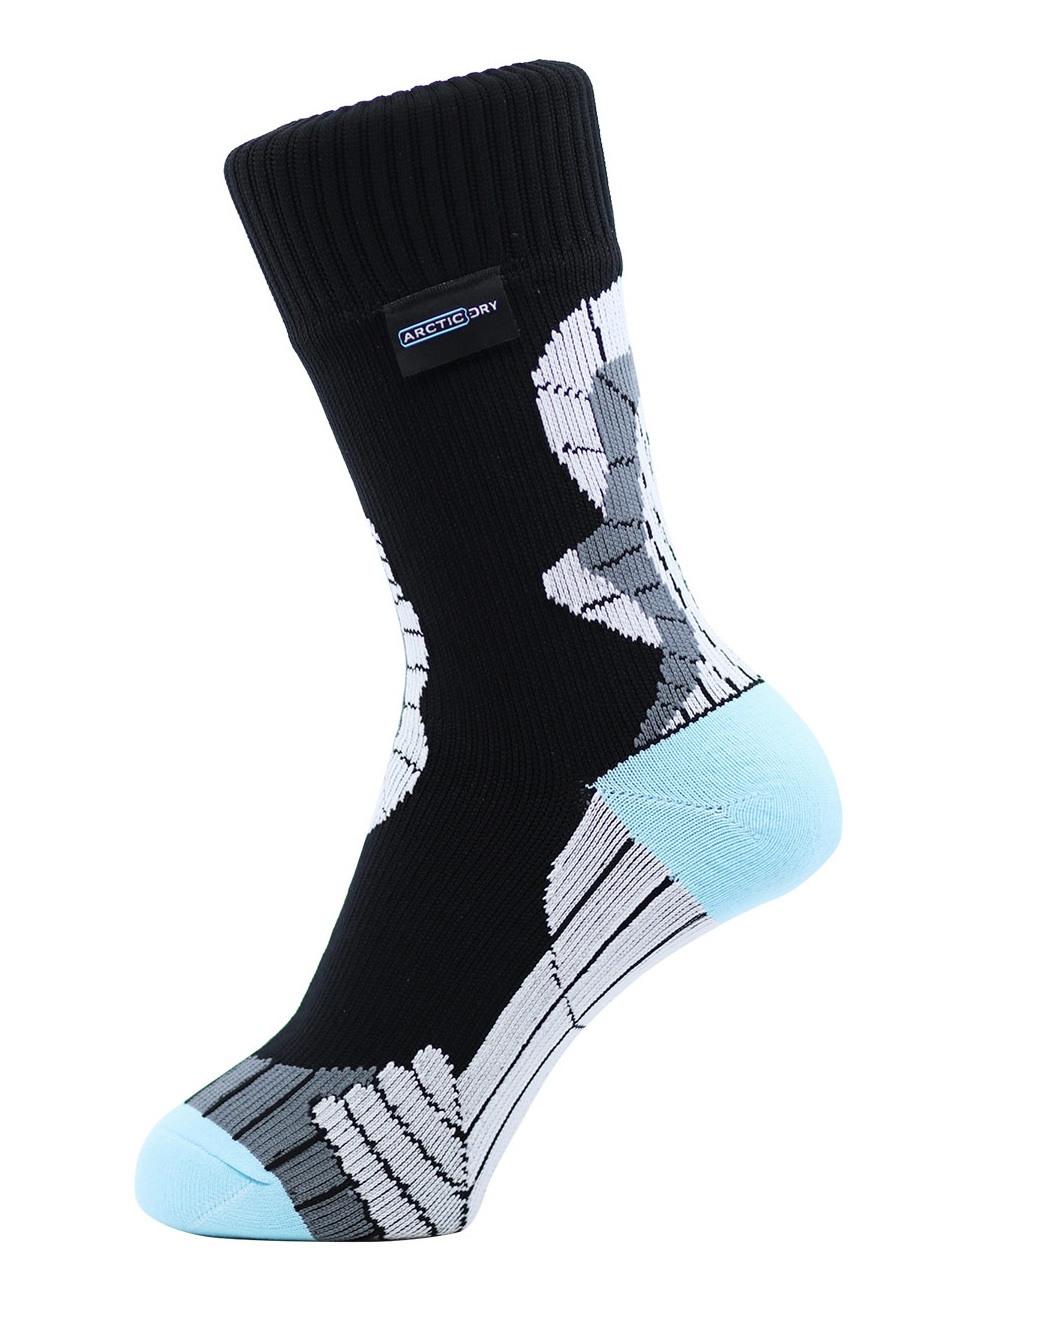 SealSkinz Thin Mid Unisex Grey Waterproof Windproof Hiking Long Socks 